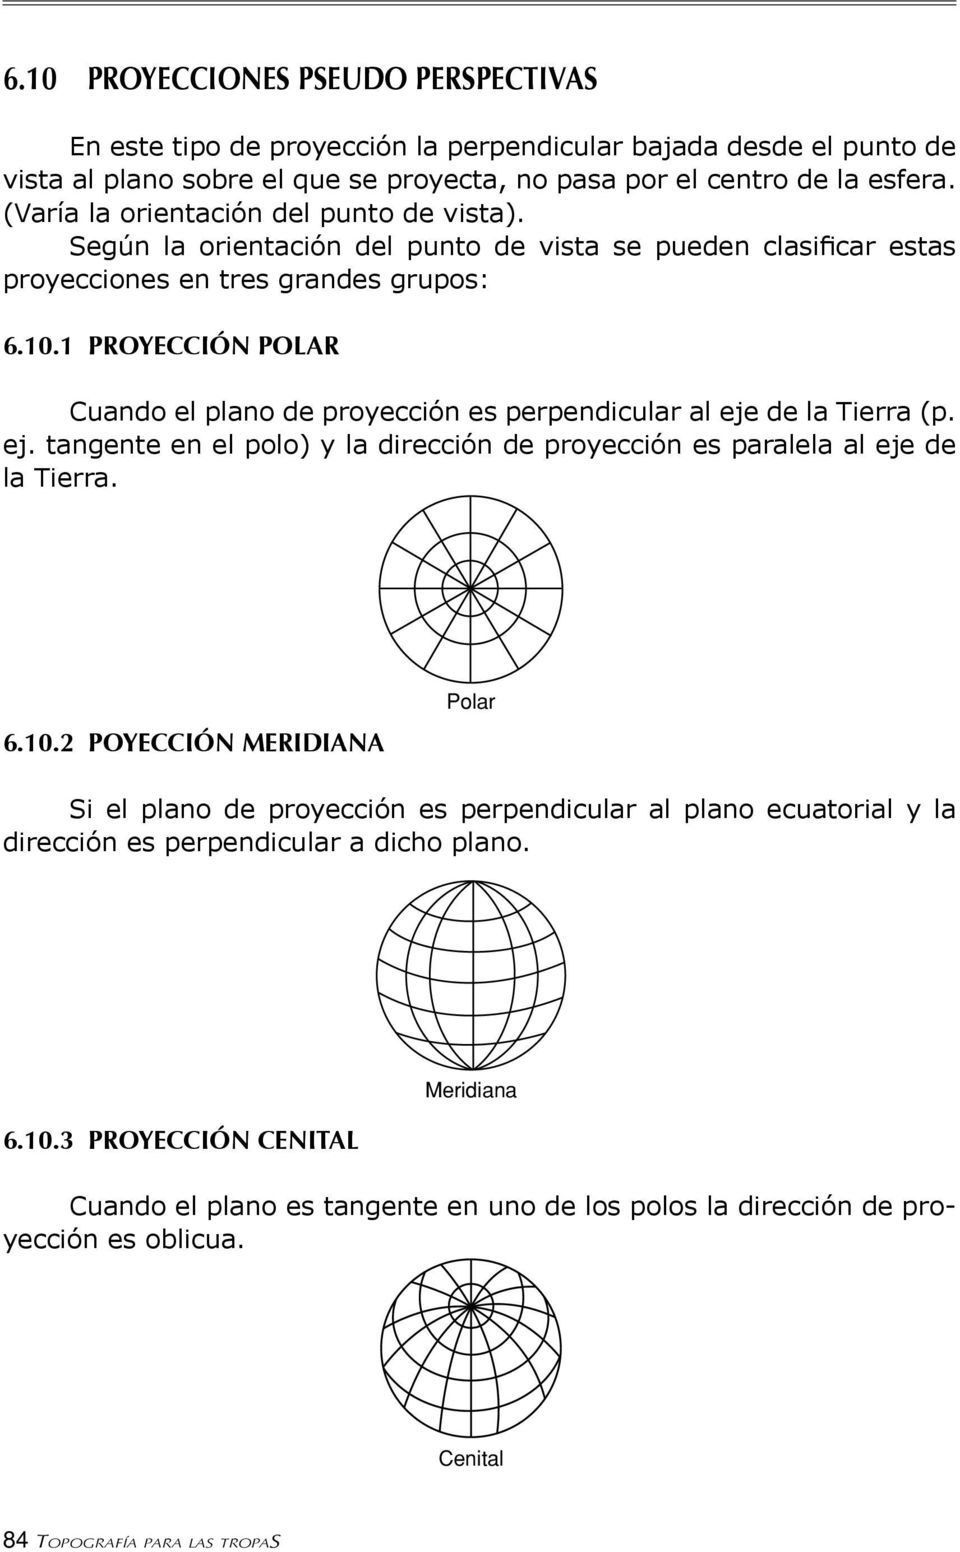 1 PROYECCIÓN POLAR Cuando el plano de proyección es perpendicular al eje de la Tierra (p. ej. tangente en el polo) y la dirección de proyección es paralela al eje de la Tierra. 6.10.